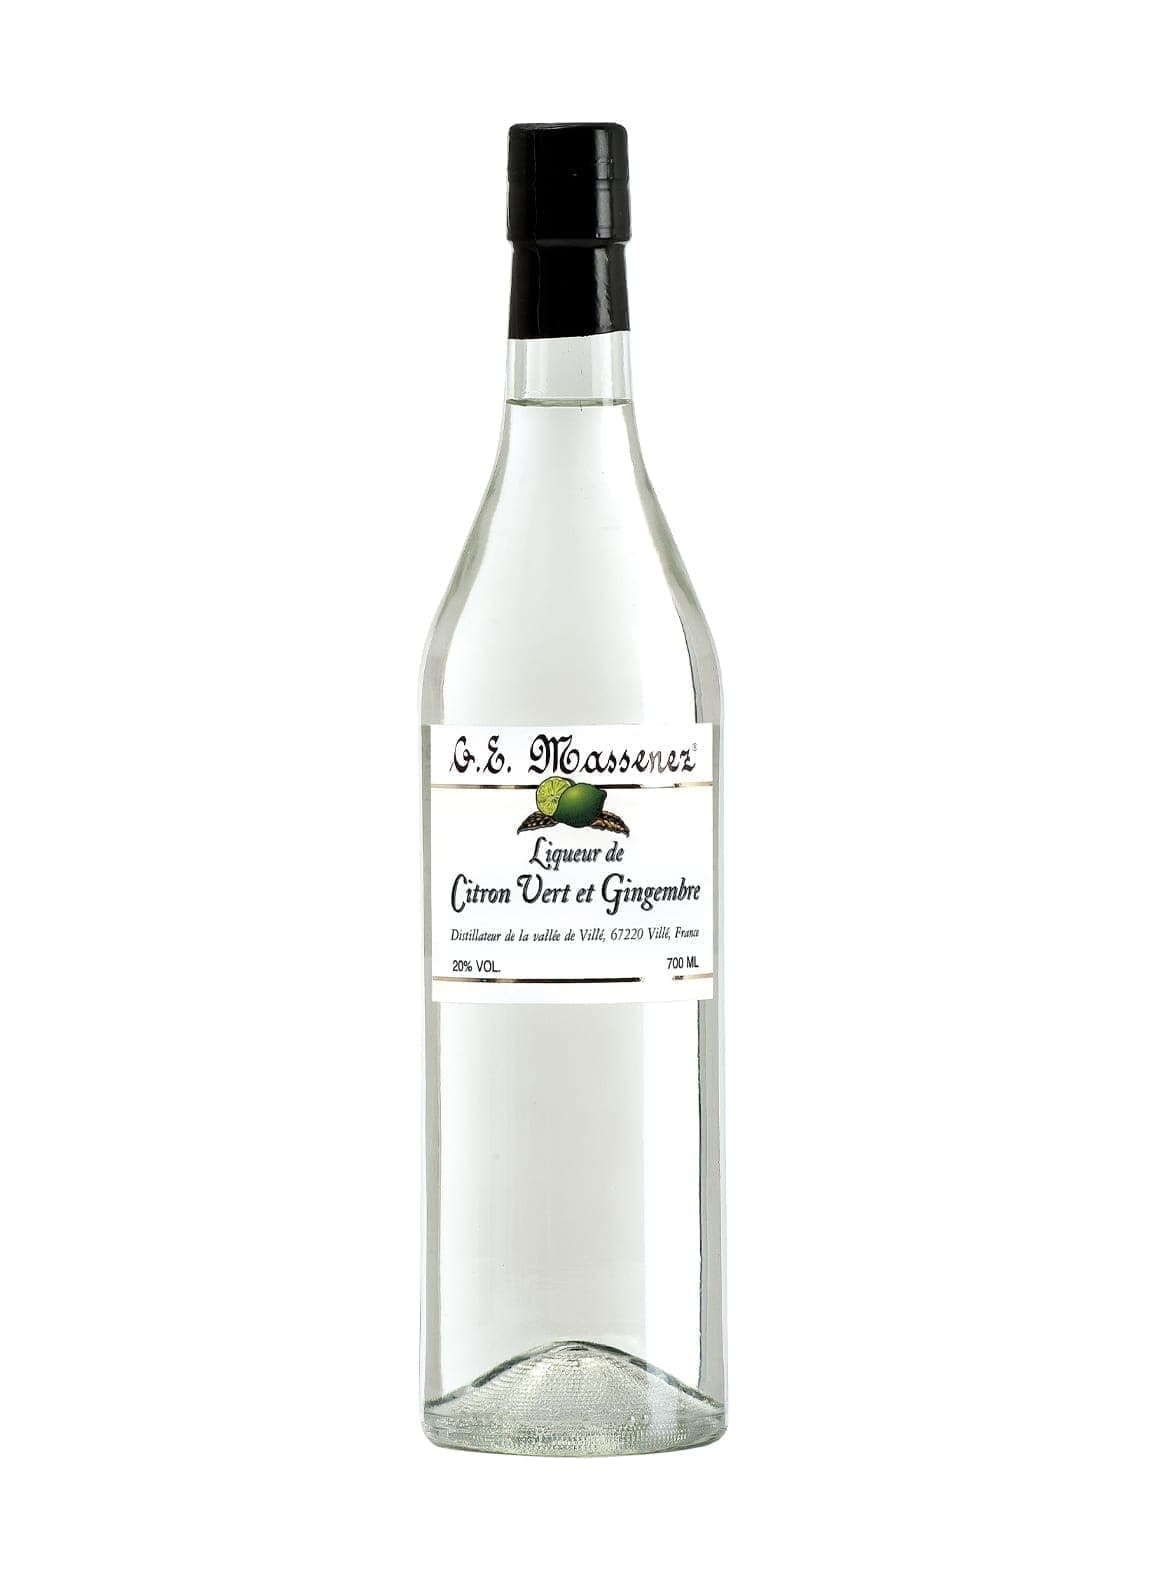 Massenez Liqueur Creme de Citron Vert et Gingembre (Lime & Ginger) 20% 700ml | Liqueurs | Shop online at Spirits of France